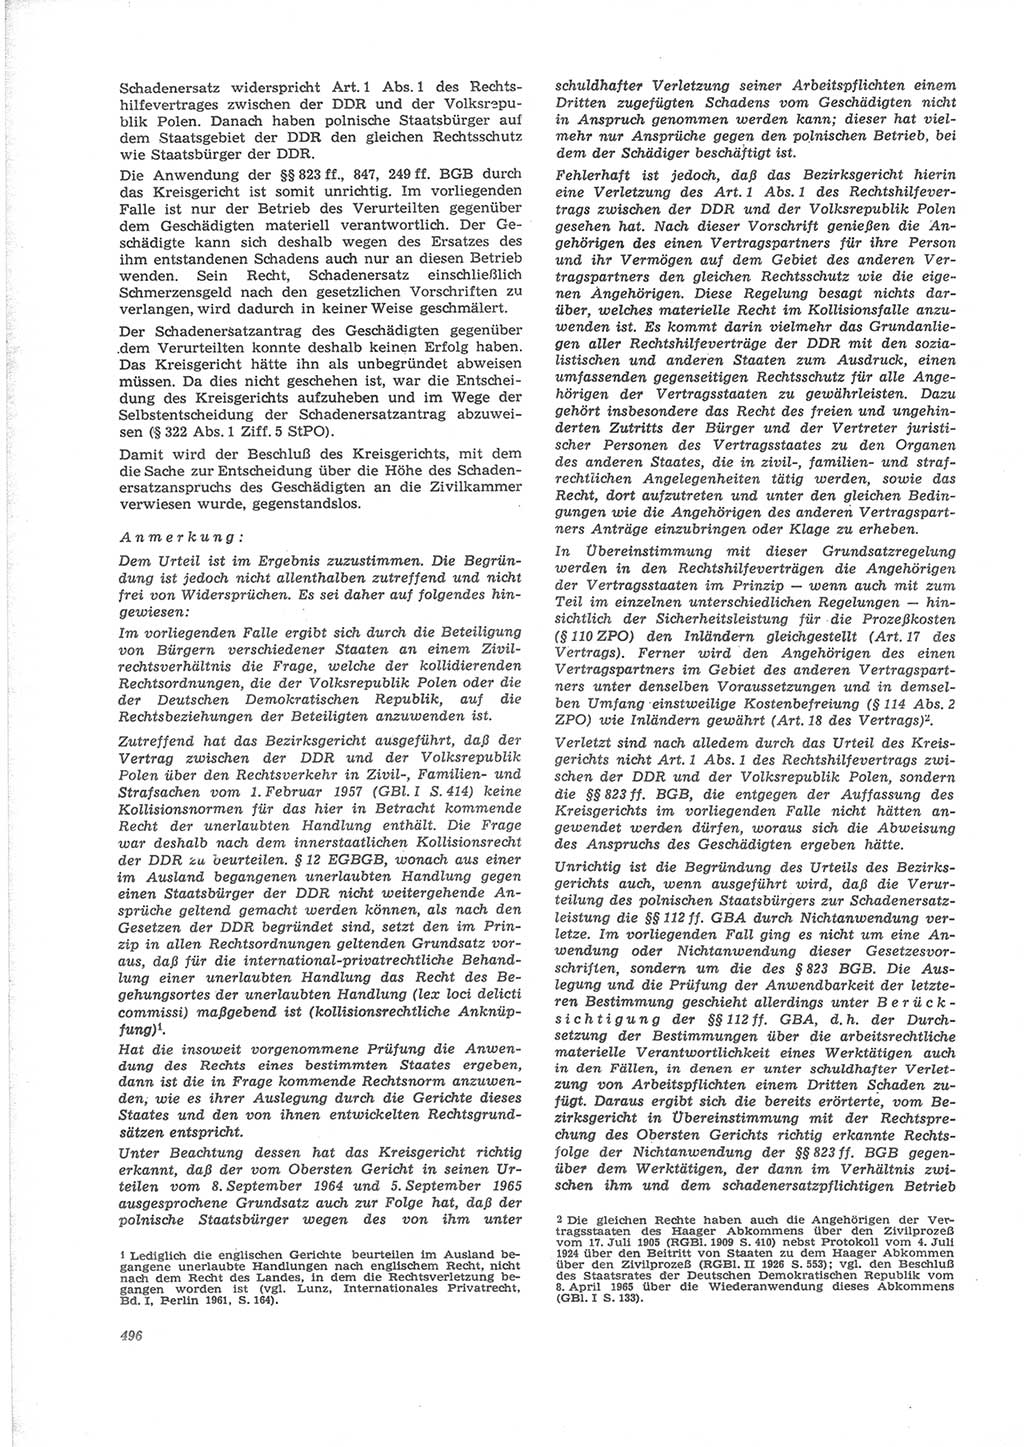 Neue Justiz (NJ), Zeitschrift für Recht und Rechtswissenschaft [Deutsche Demokratische Republik (DDR)], 24. Jahrgang 1970, Seite 496 (NJ DDR 1970, S. 496)